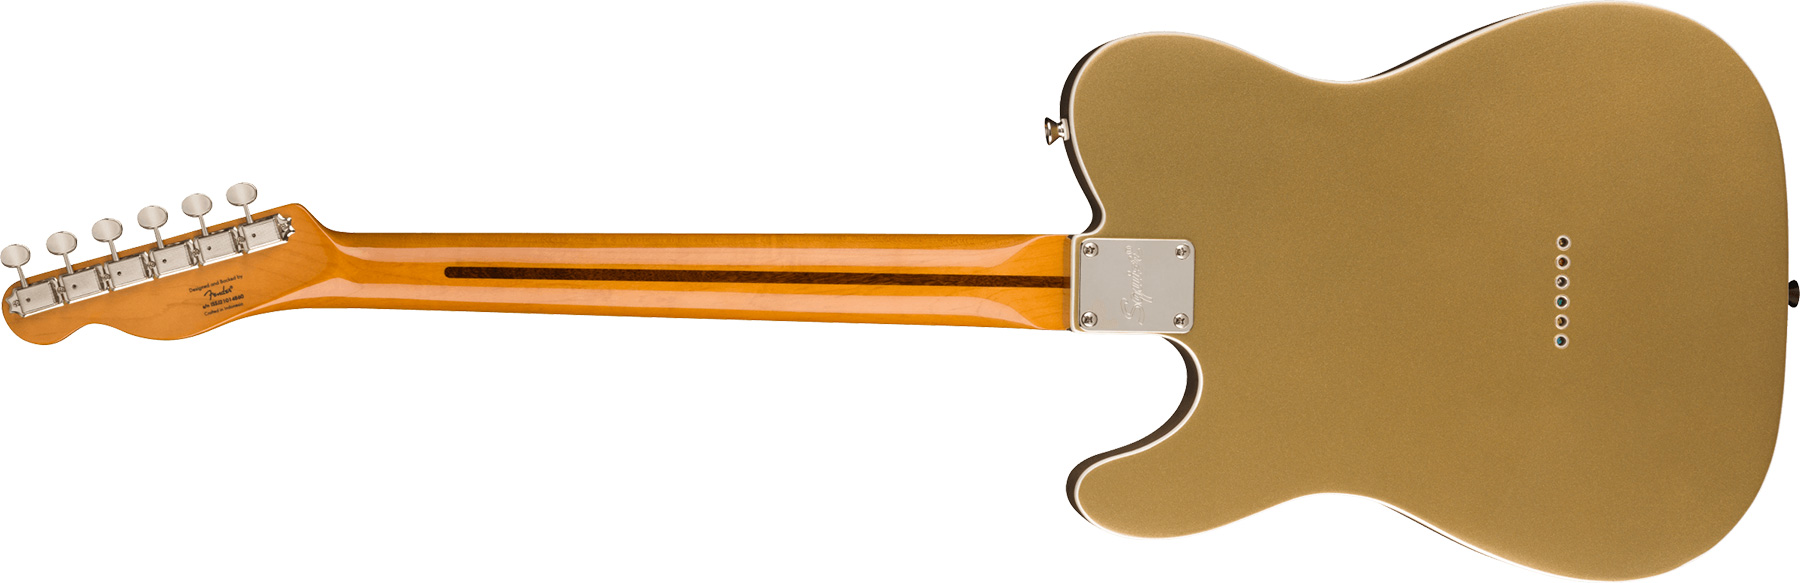 Squier Tele '60s Thinline Parchment Pickguard Classic Vibe Fsr 2s Ht Mn - Aztec Gold - Guitarra eléctrica con forma de tel - Variation 1